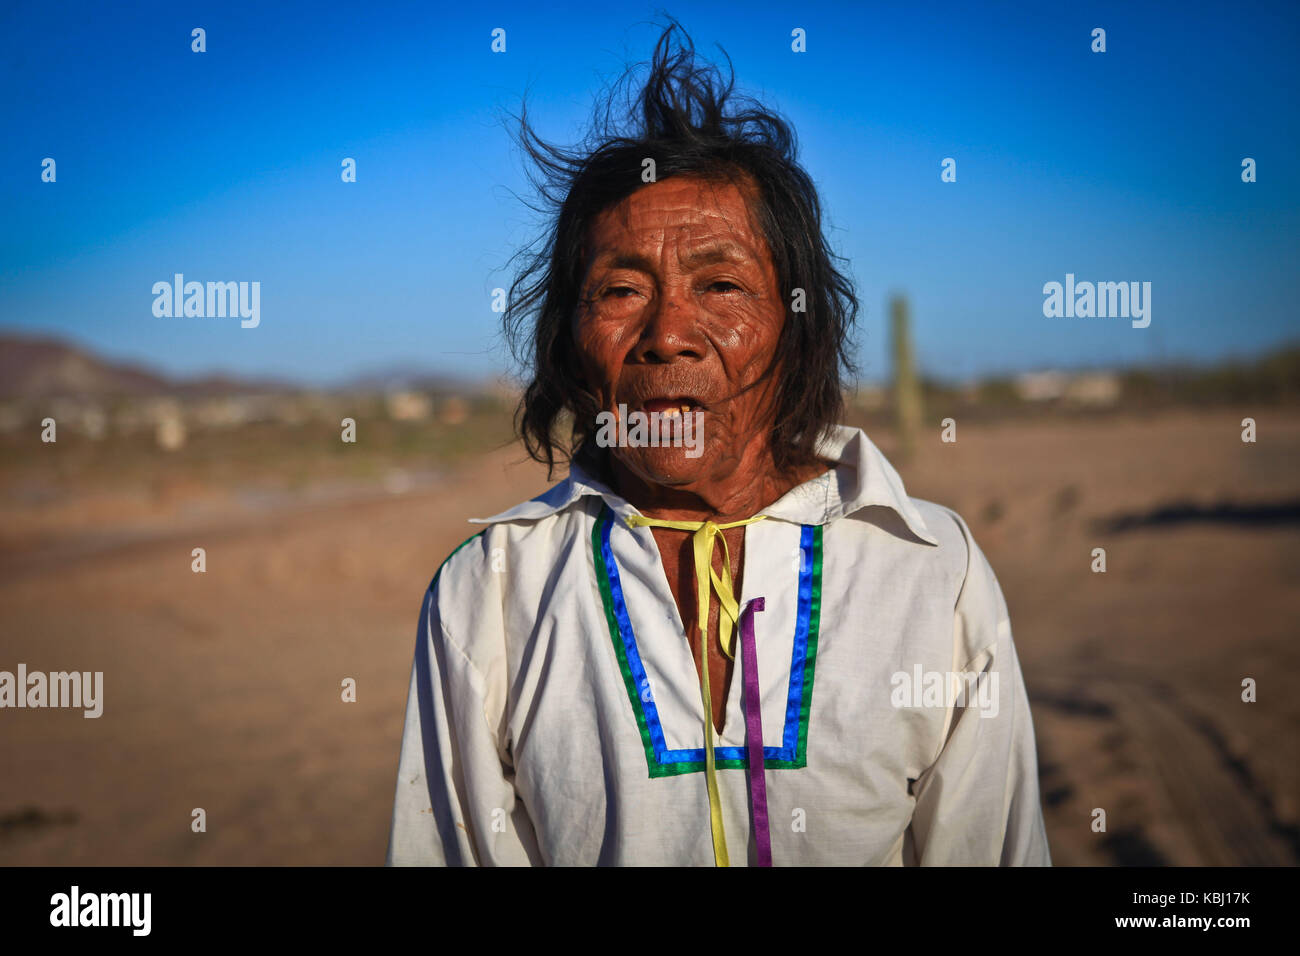 Francisco ¨Capapo Barnet, sciamano del gruppo etnico seri è un personaggio mitologico della nazione Comcaac, conosciuta anche come Punta Chueca nel deserto di sonora Messico. Foto Stock